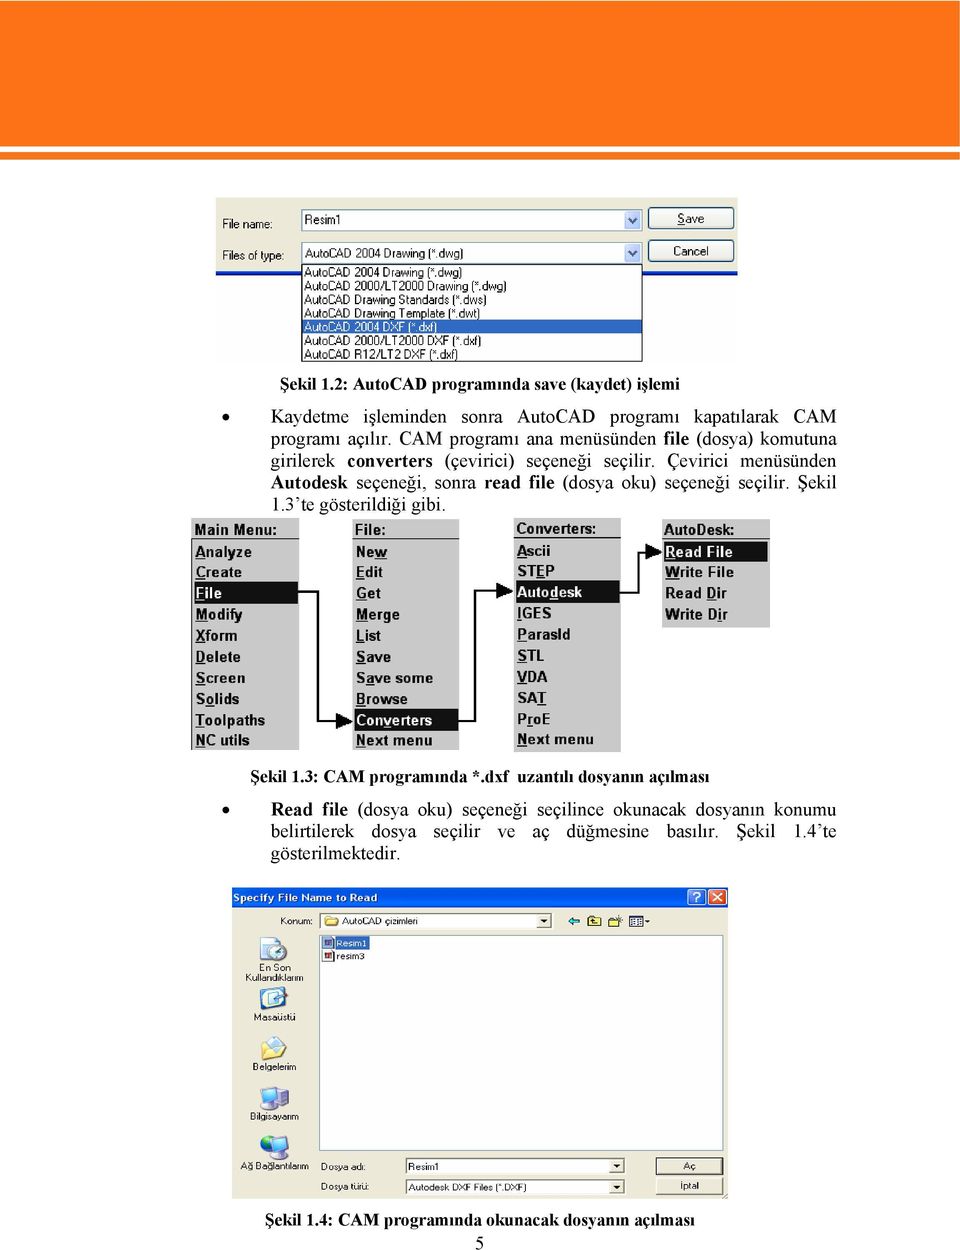 Çevirici menüsünden Autodesk seçeneği, sonra read file (dosya oku) seçeneği seçilir. Şekil 1.3 te gösterildiği gibi. Şekil 1.3: CAM programında *.